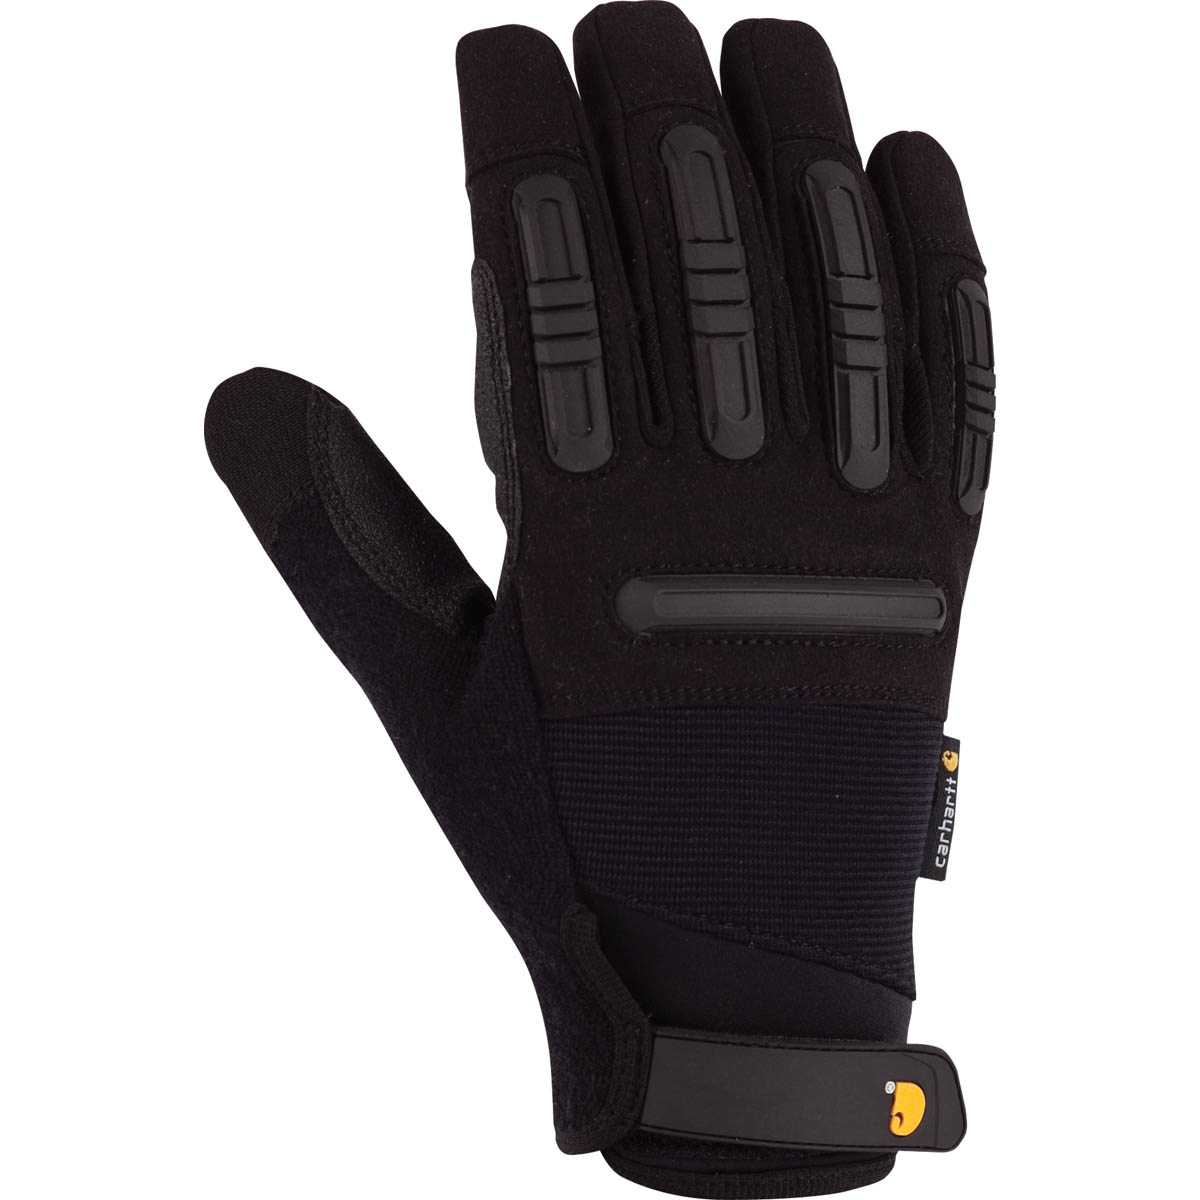 Carhartt Men's Ballistic Gloves